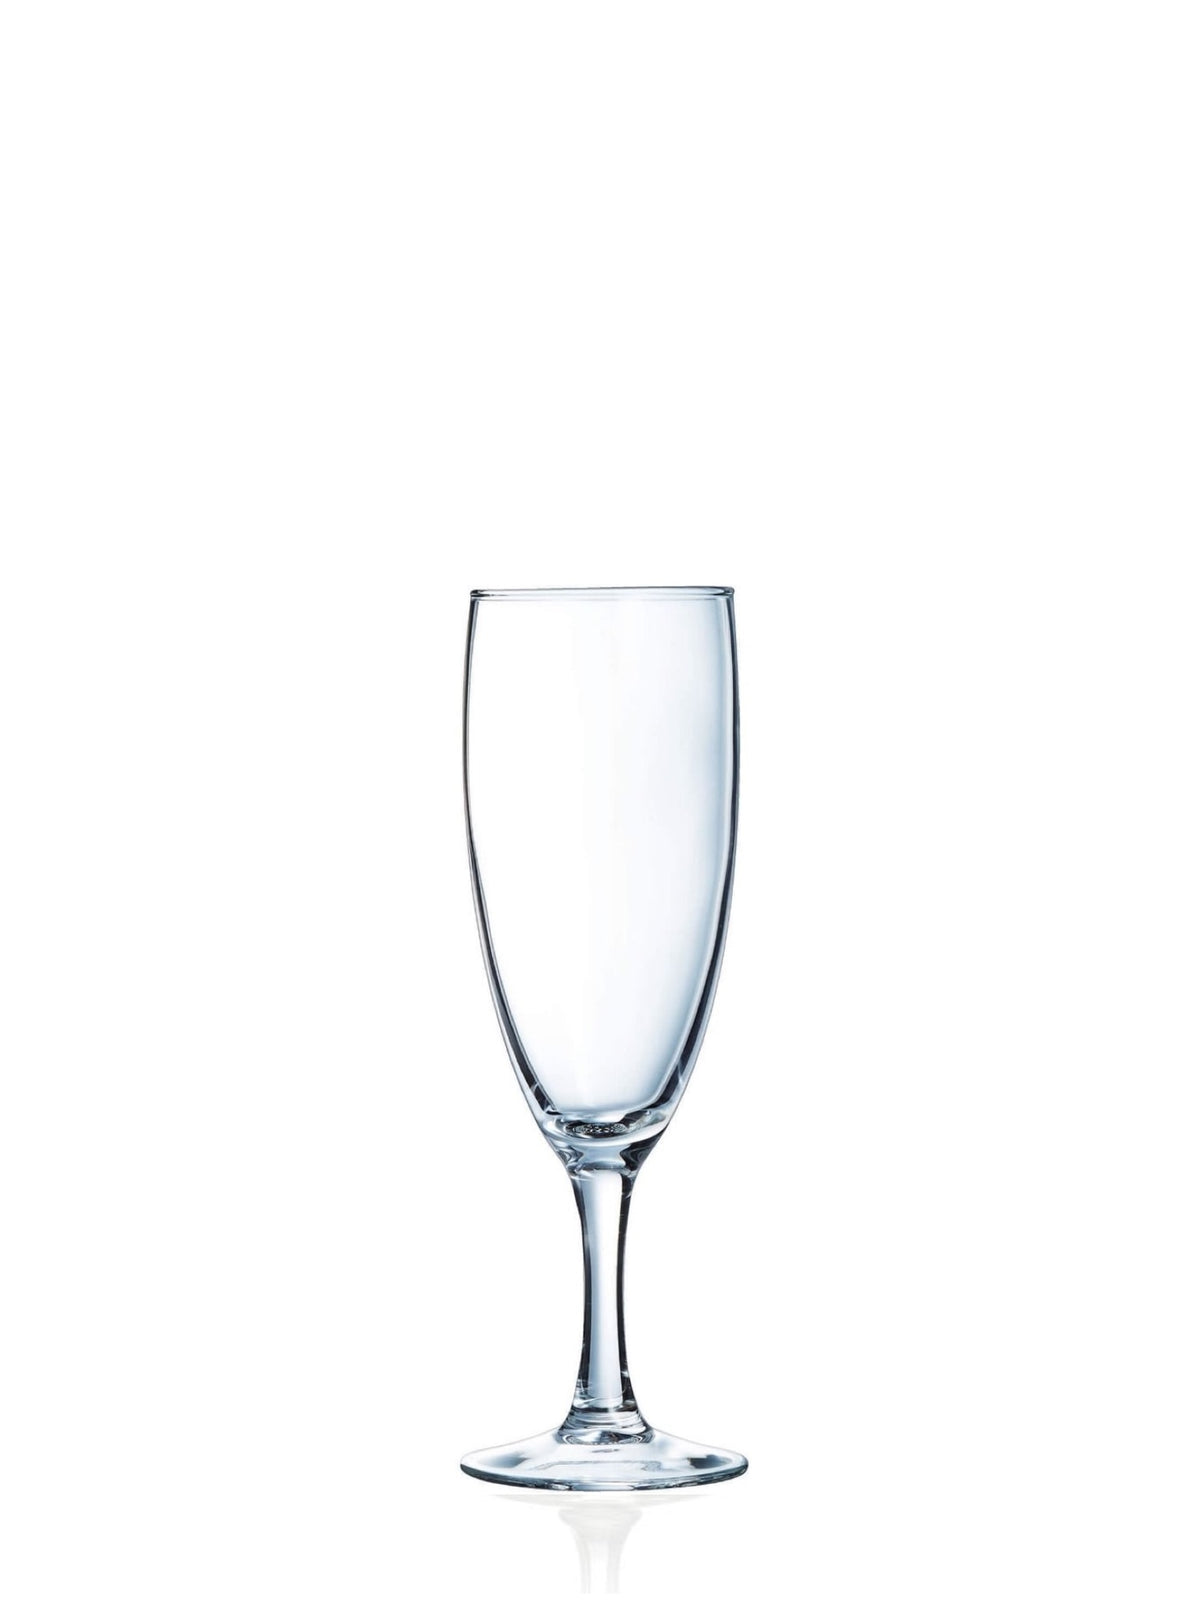 Prøv denne smukke Champagne Ballon på 17 cl til at nyde en skøn aperitif eller en festlig toast